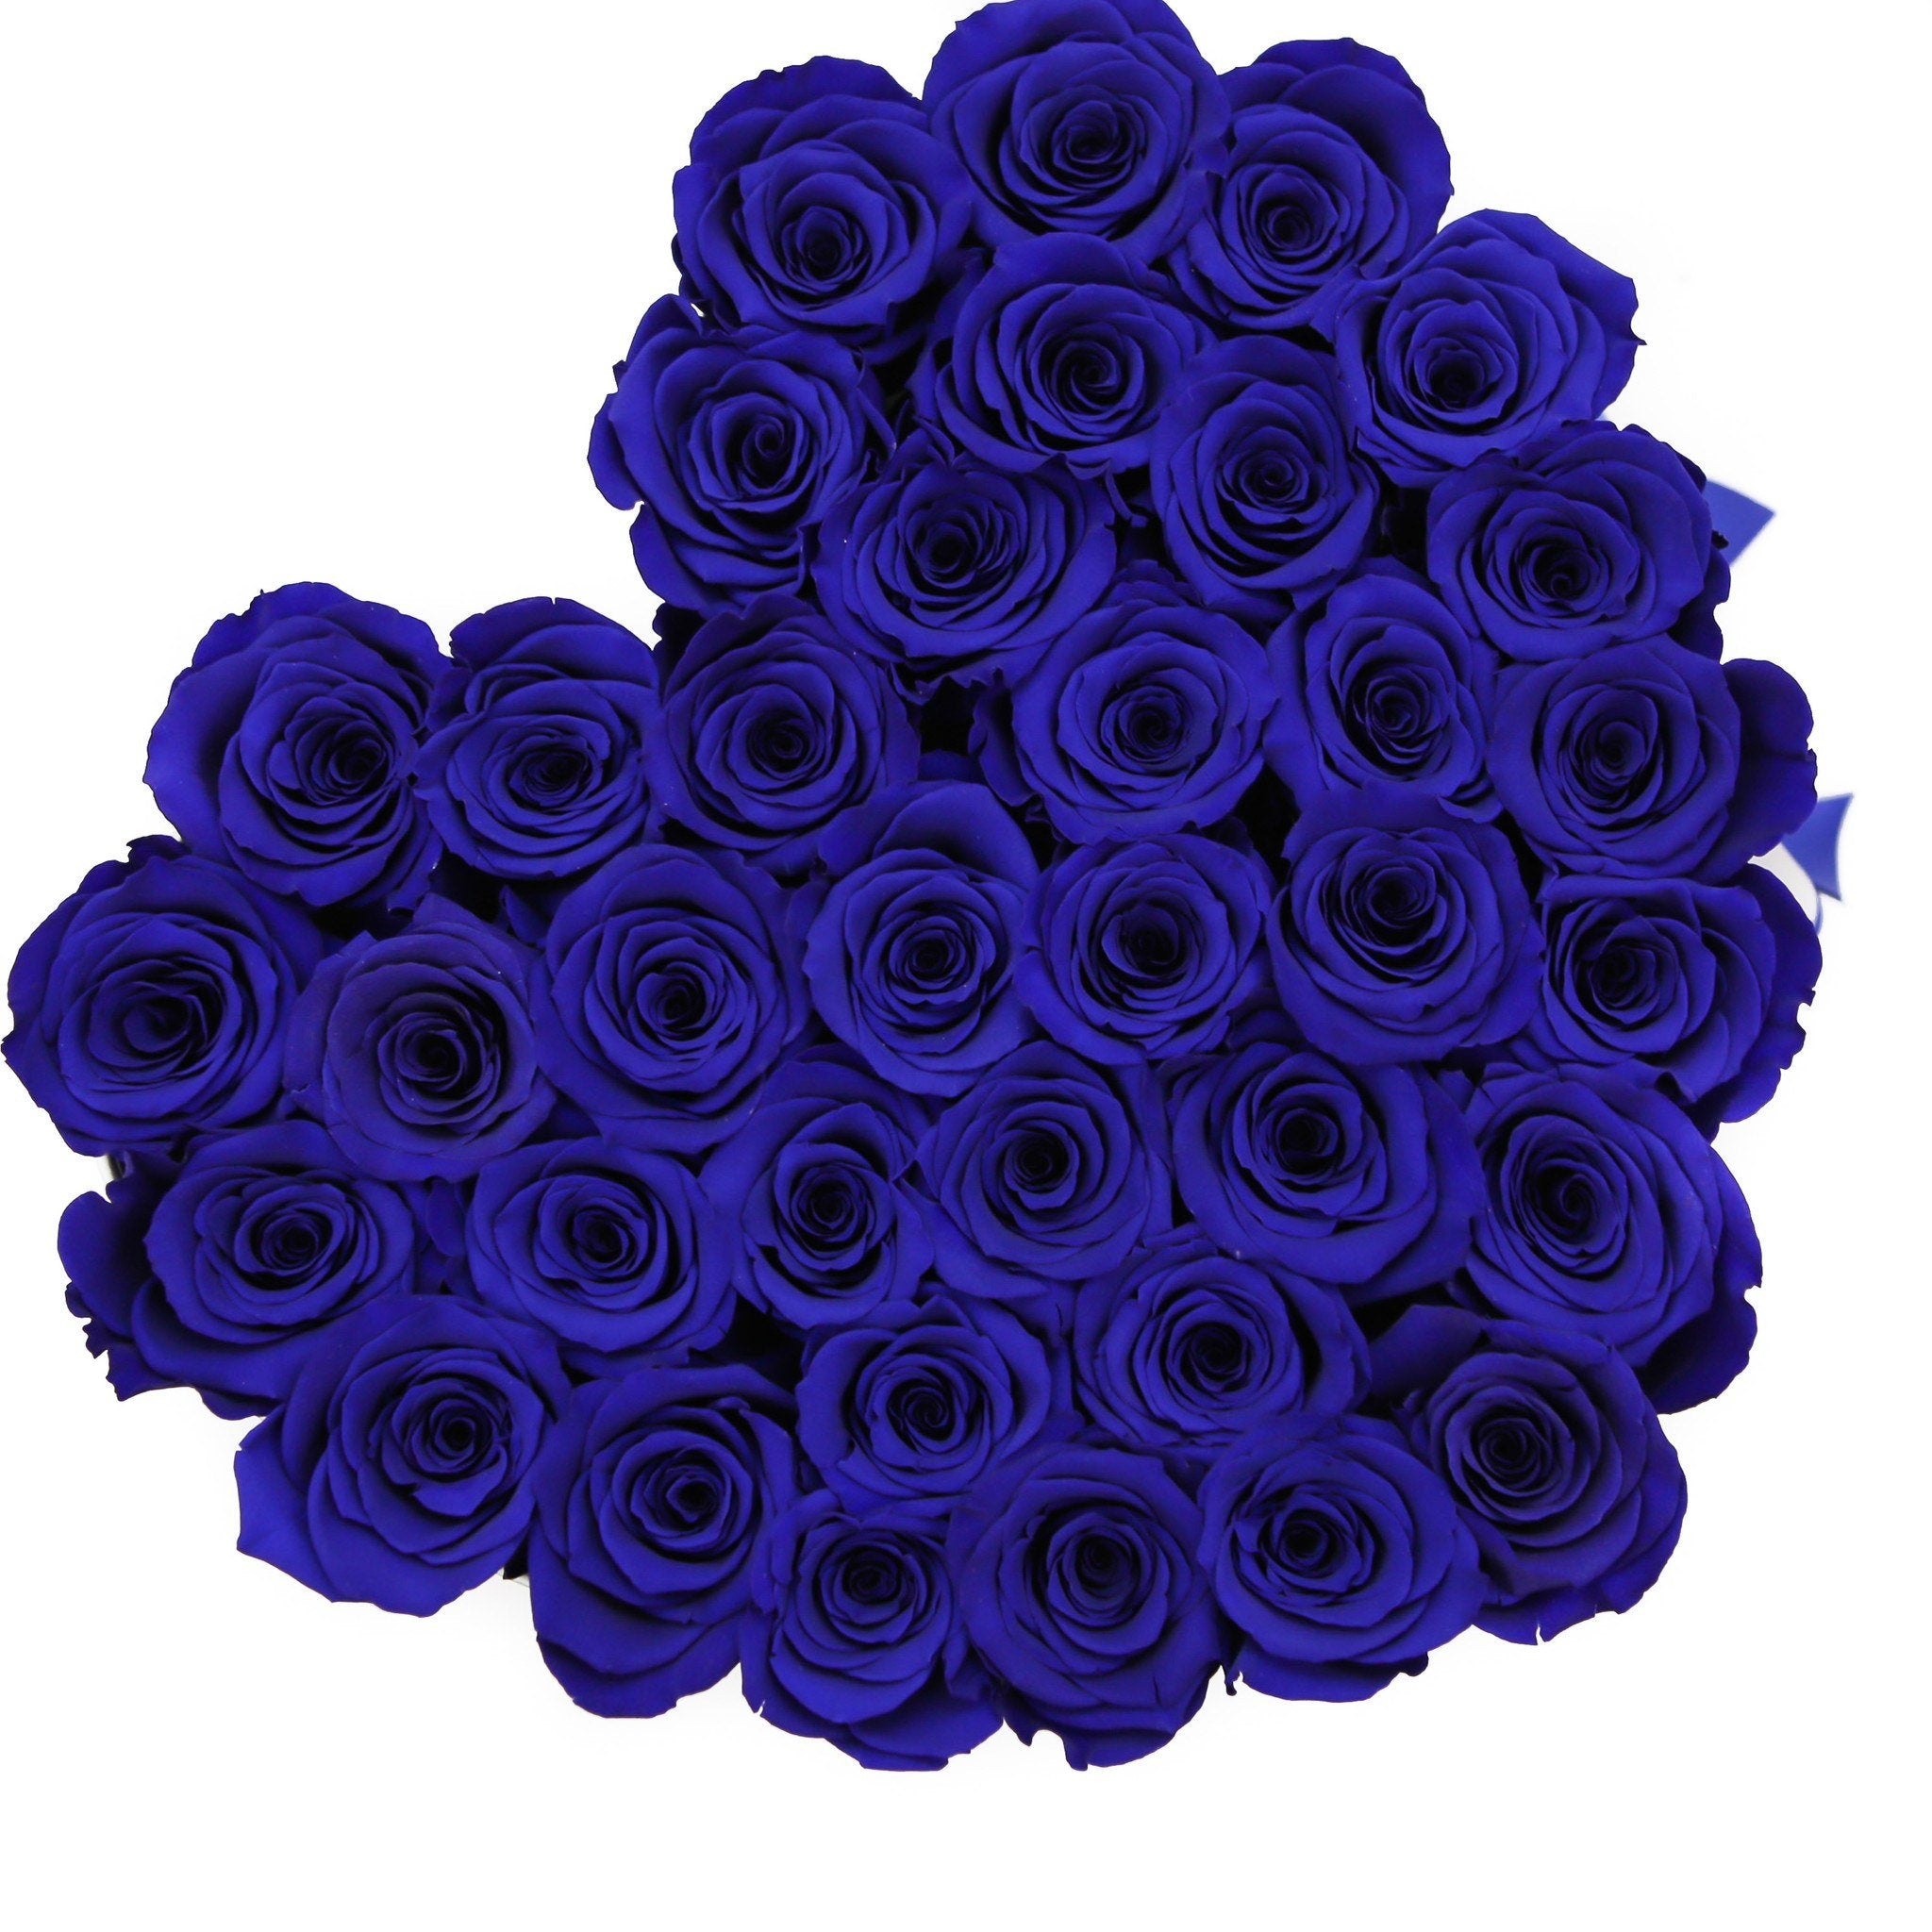 LOVE box - white - blue roses blue eternity roses - the million roses